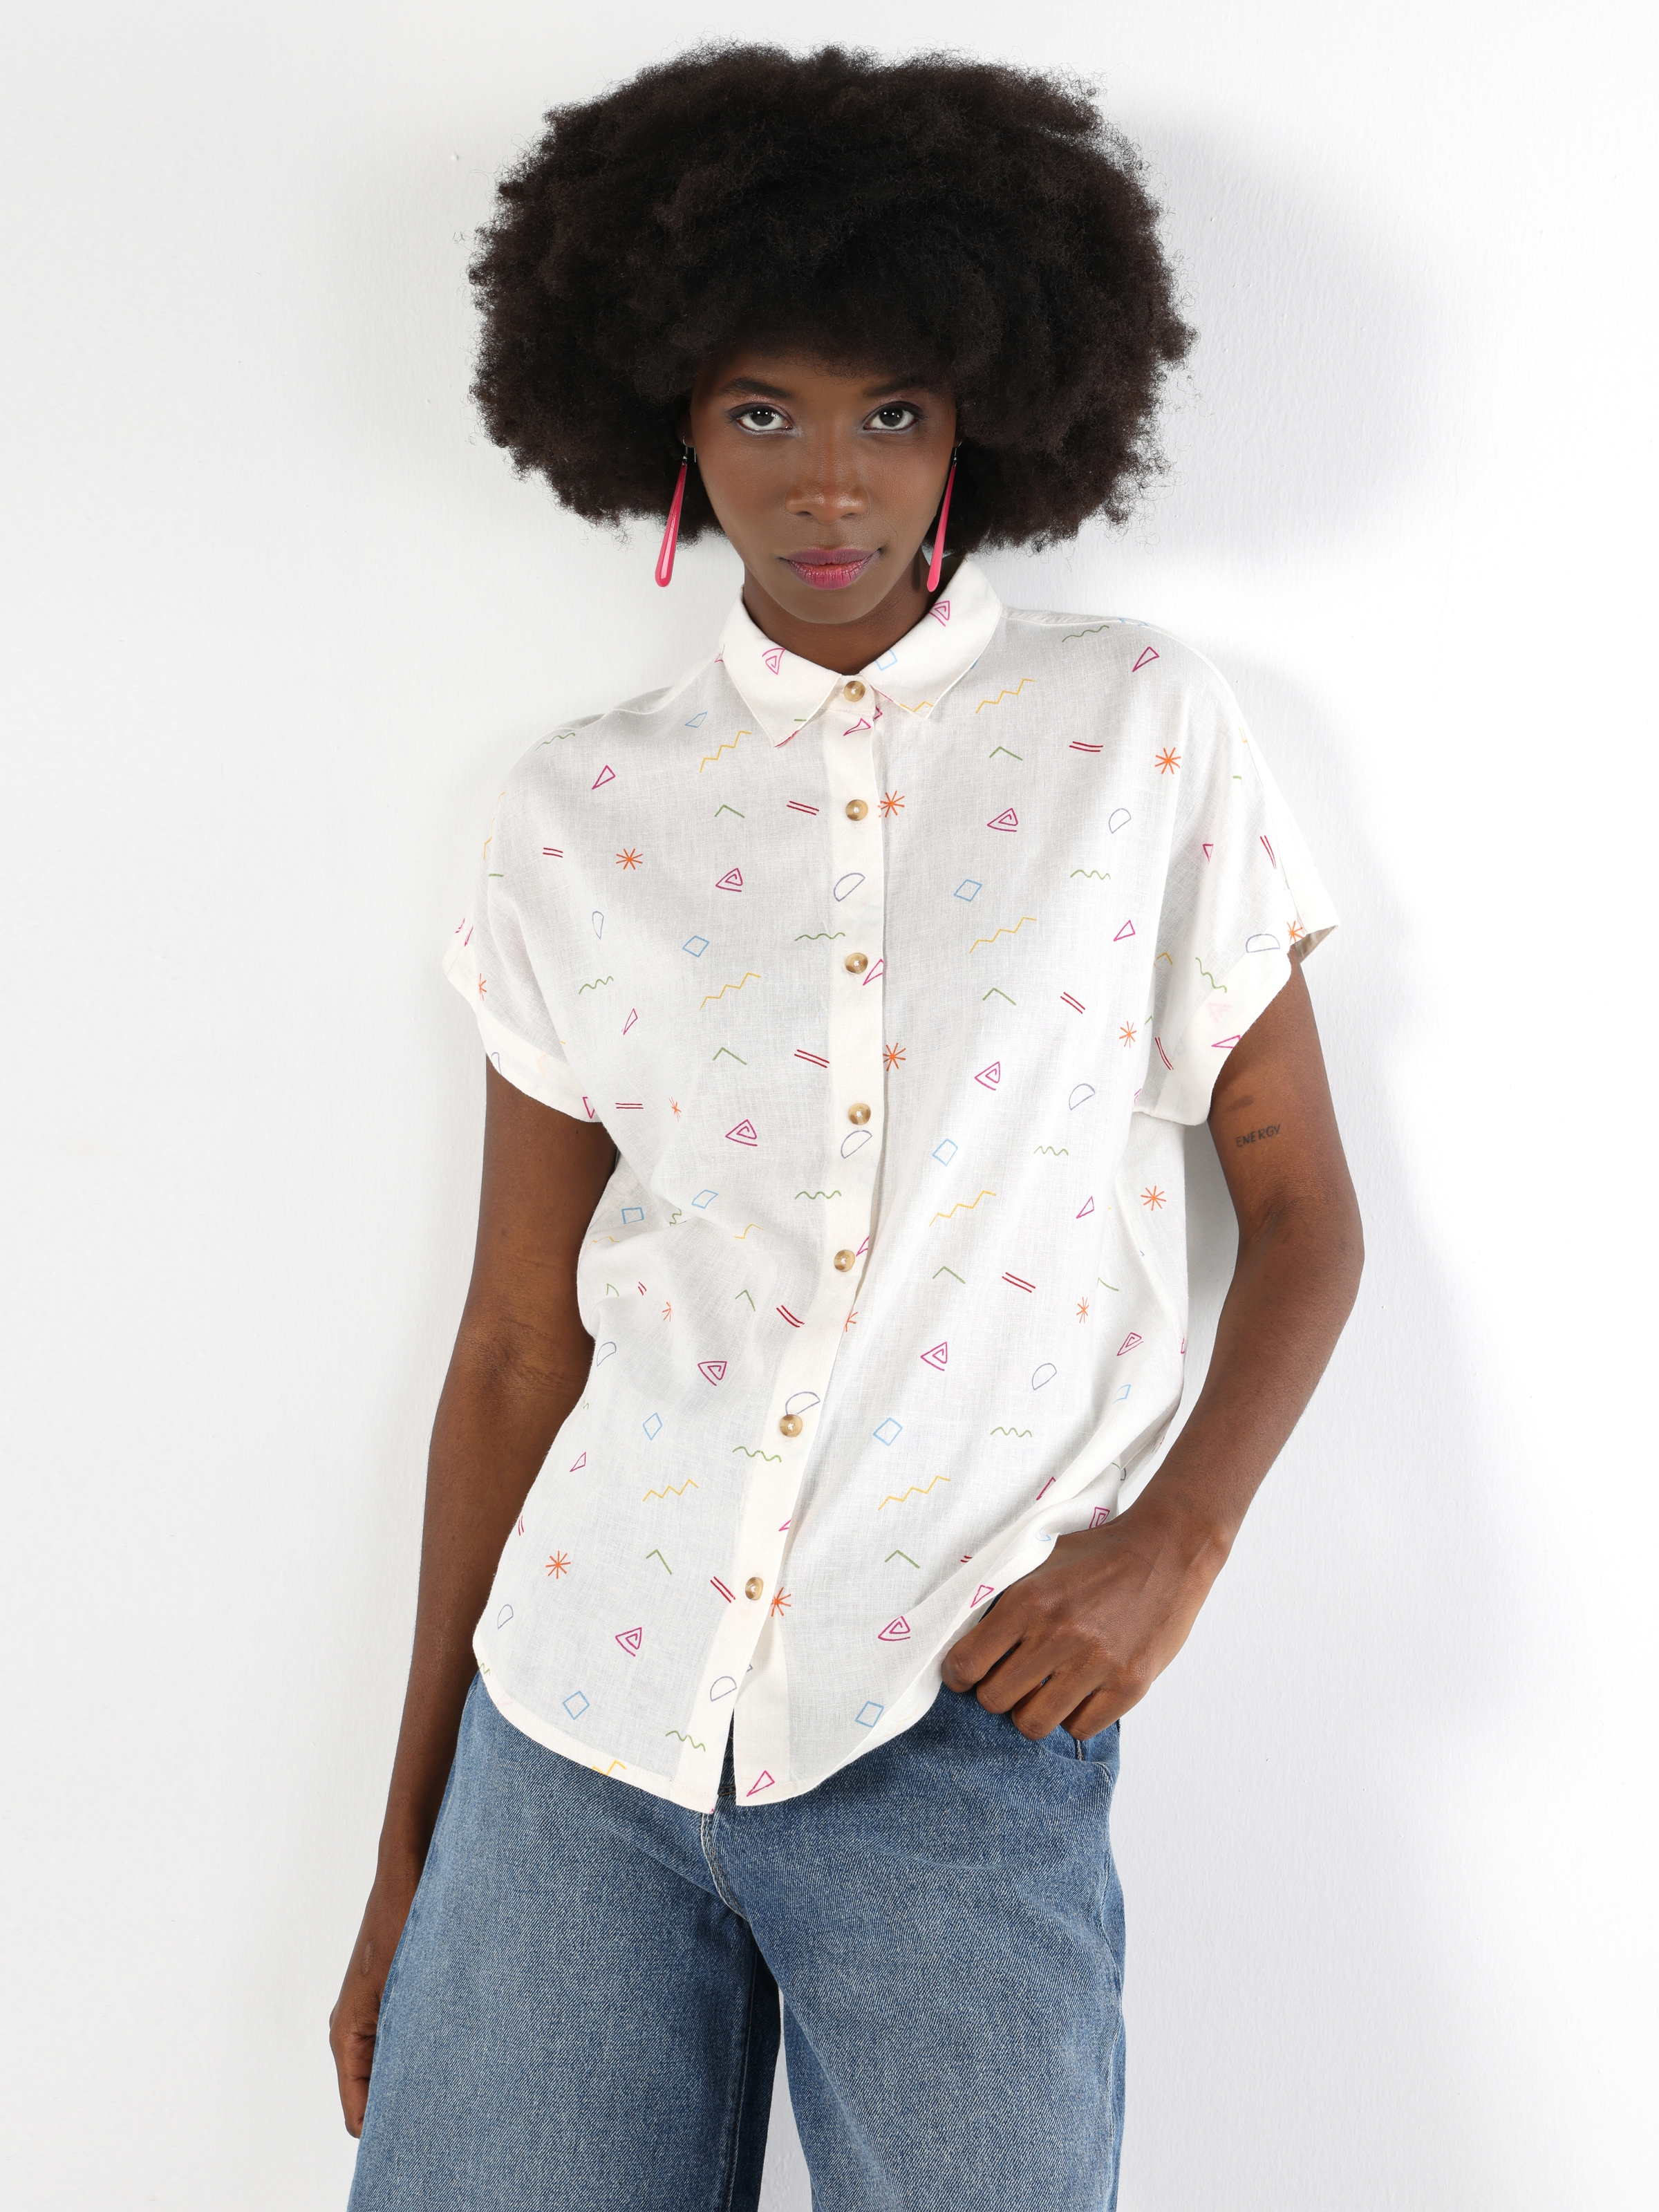 Рубашки женские белые с коротким рукавом купить в интернет-магазине OZON